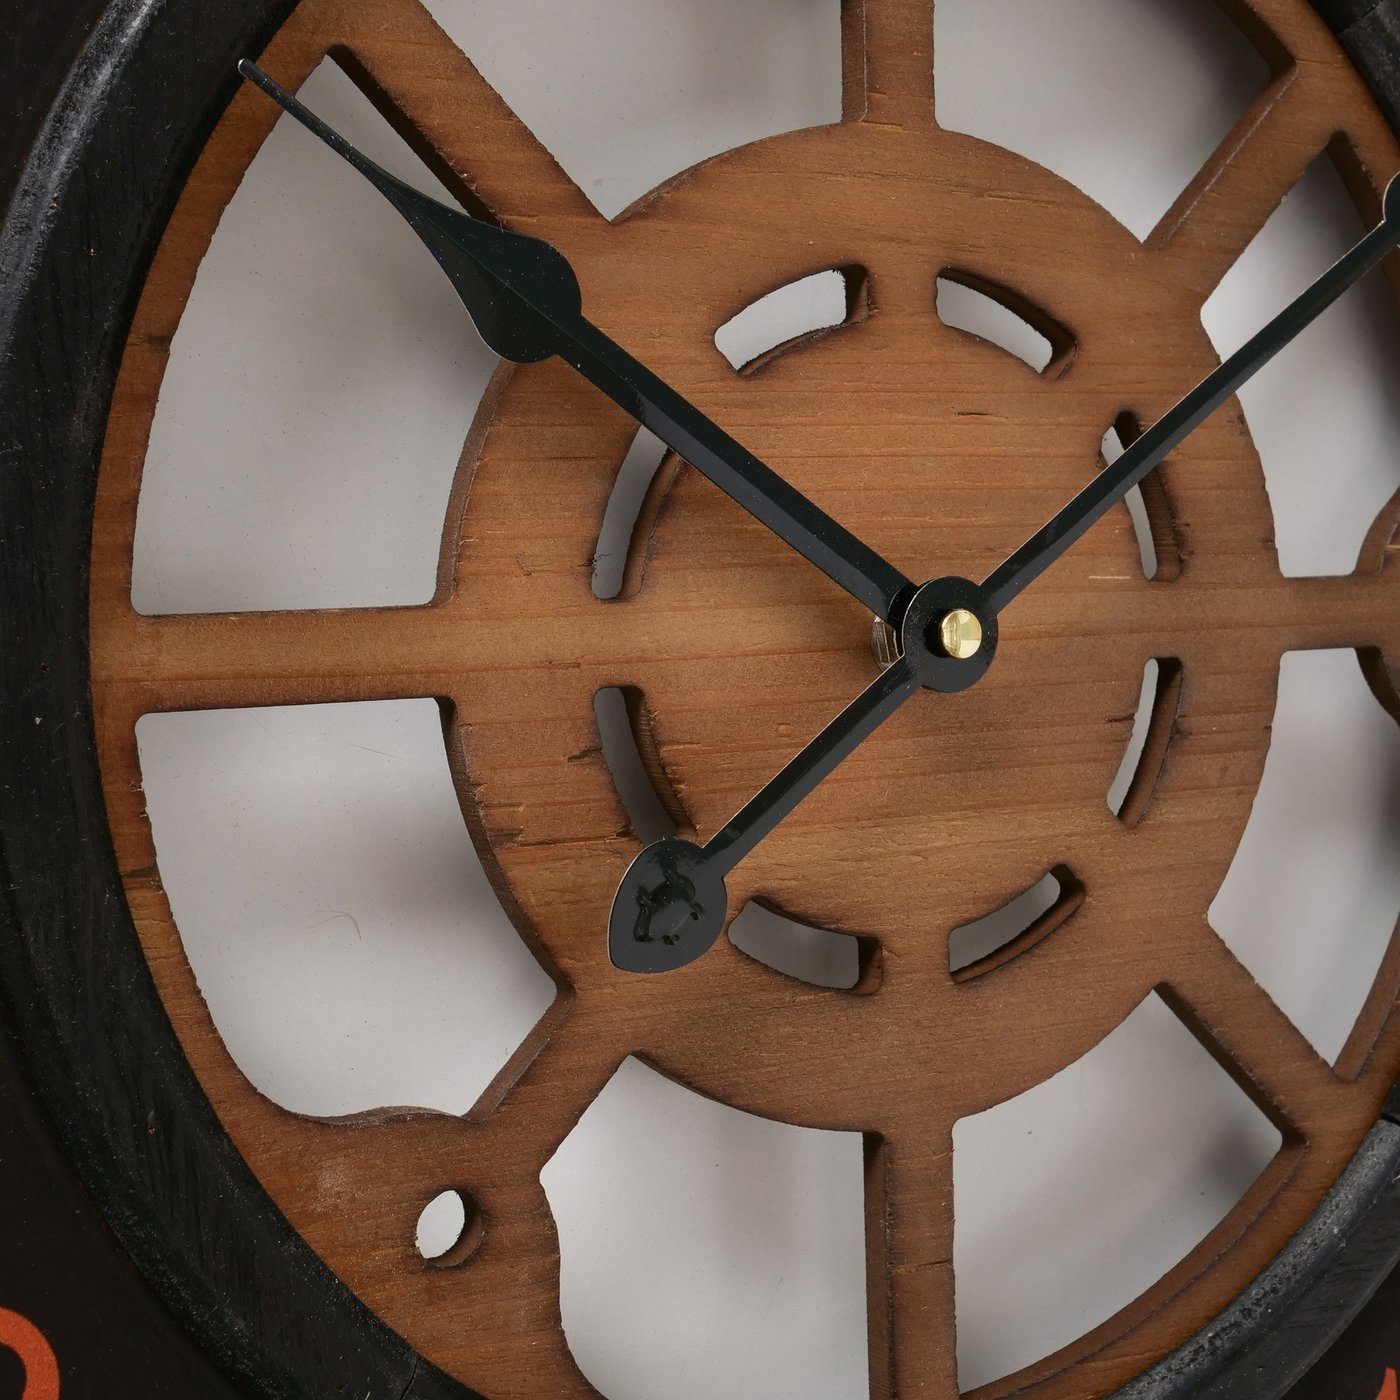 B50cm, "Alton" in Holz aus Wanduhr schwarz Uhr BOLTZE